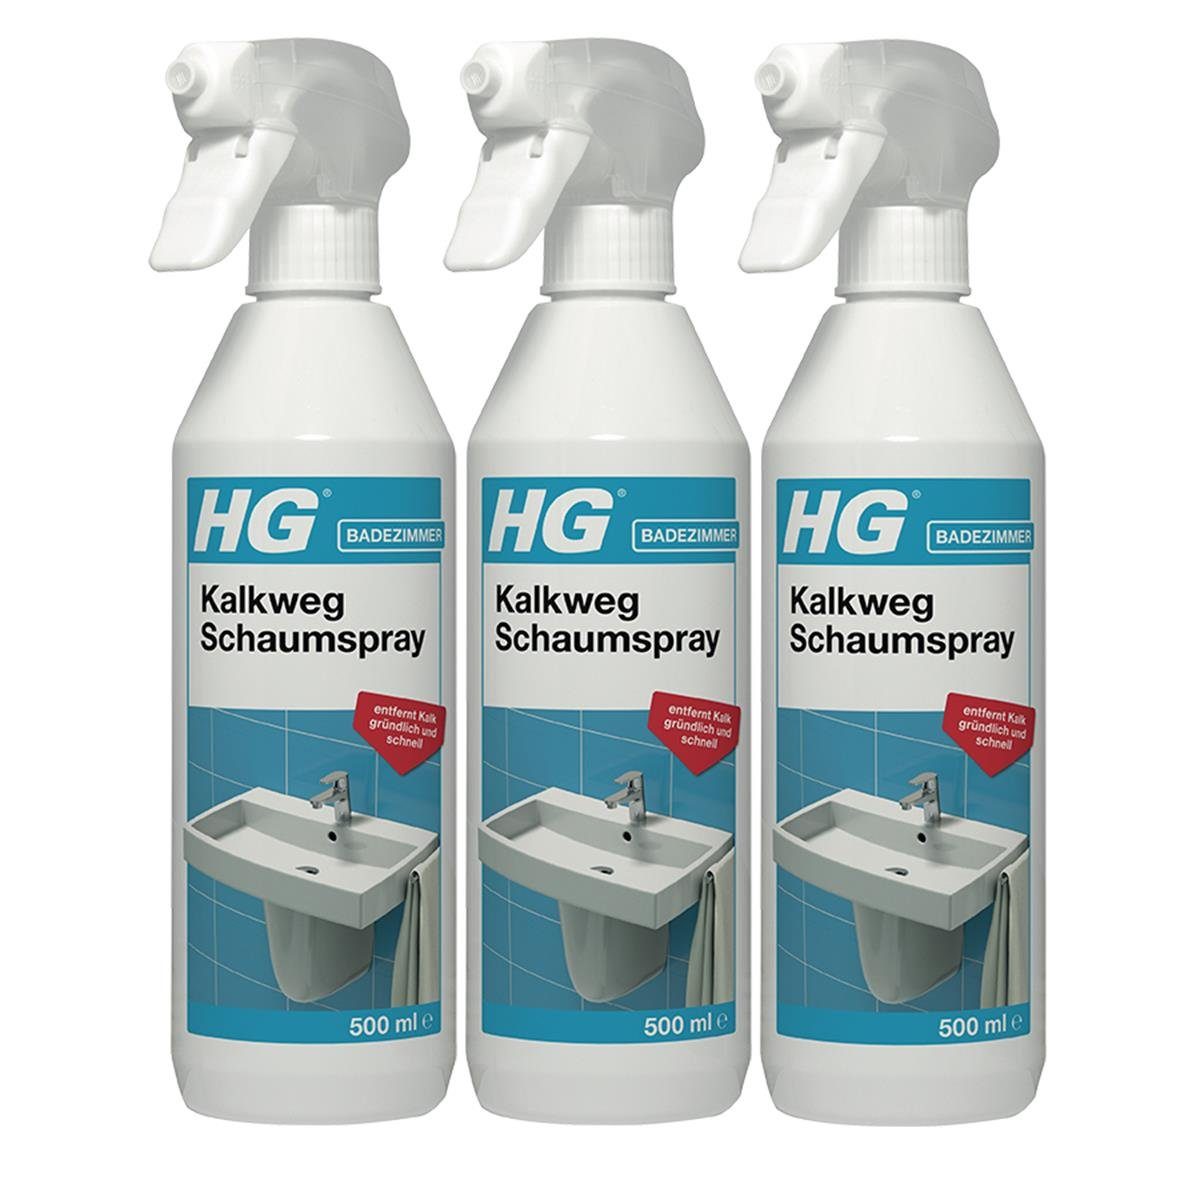 HG HG Kalkweg Entfernt 500ml - Schaumspray (3er Pack) Kalk gründlich Badreiniger